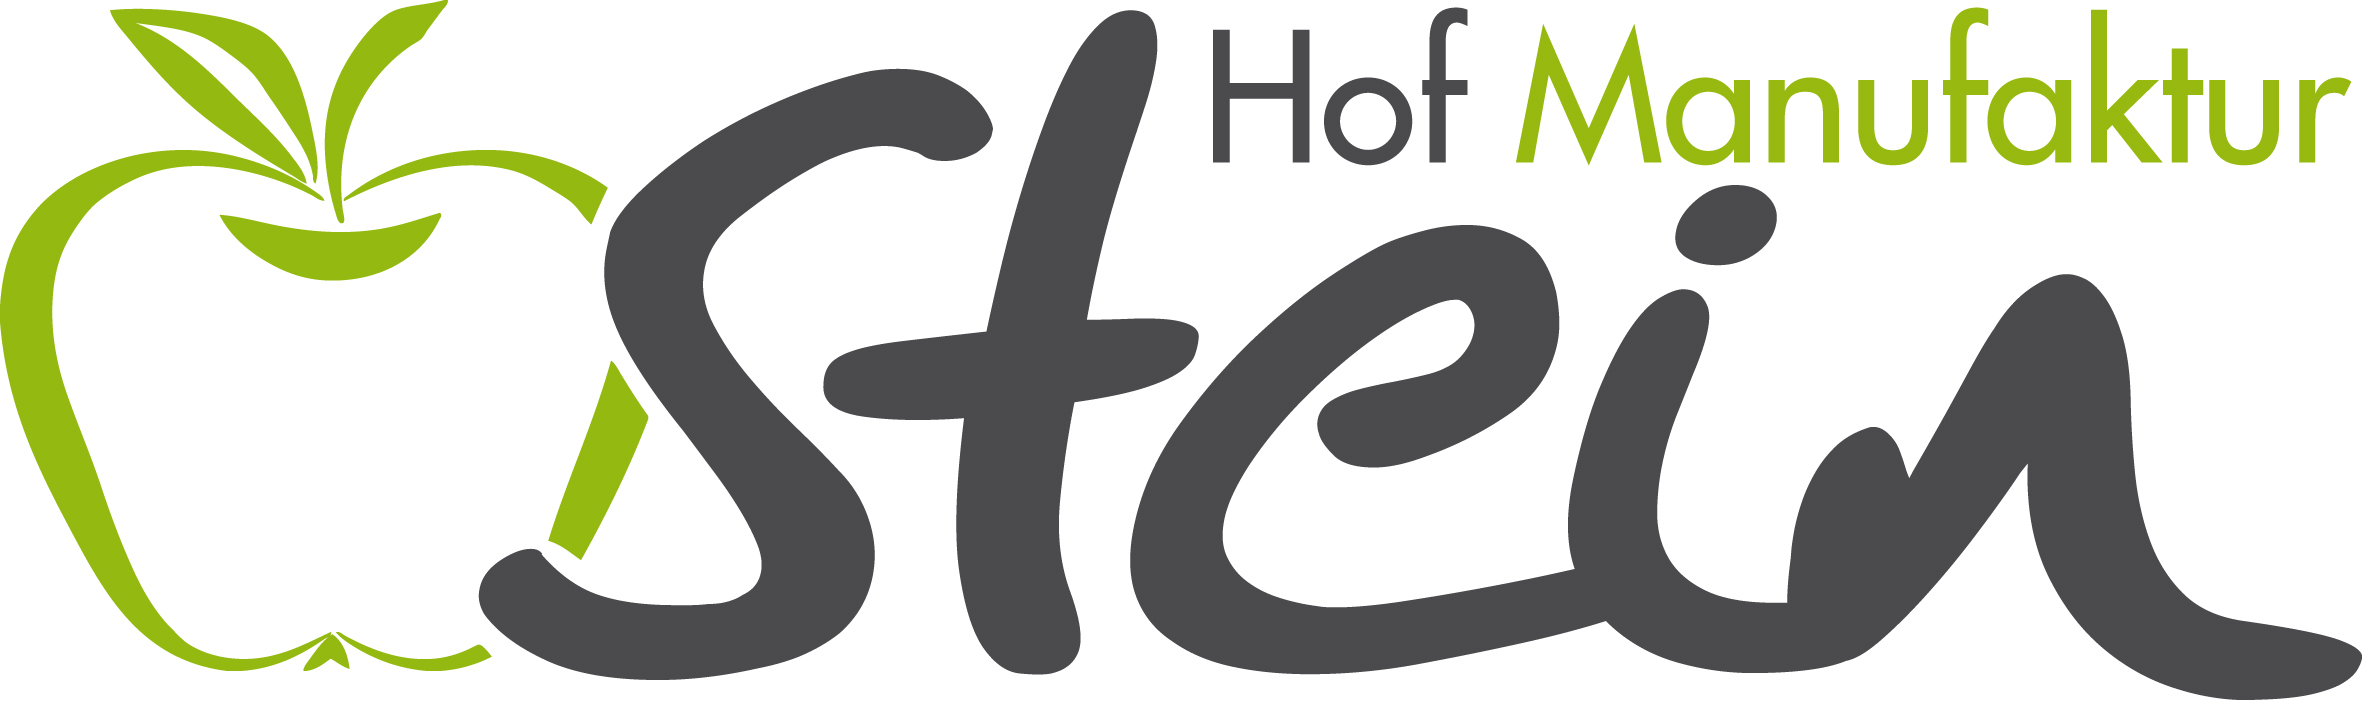 Logo von Hof Manufaktur Stein